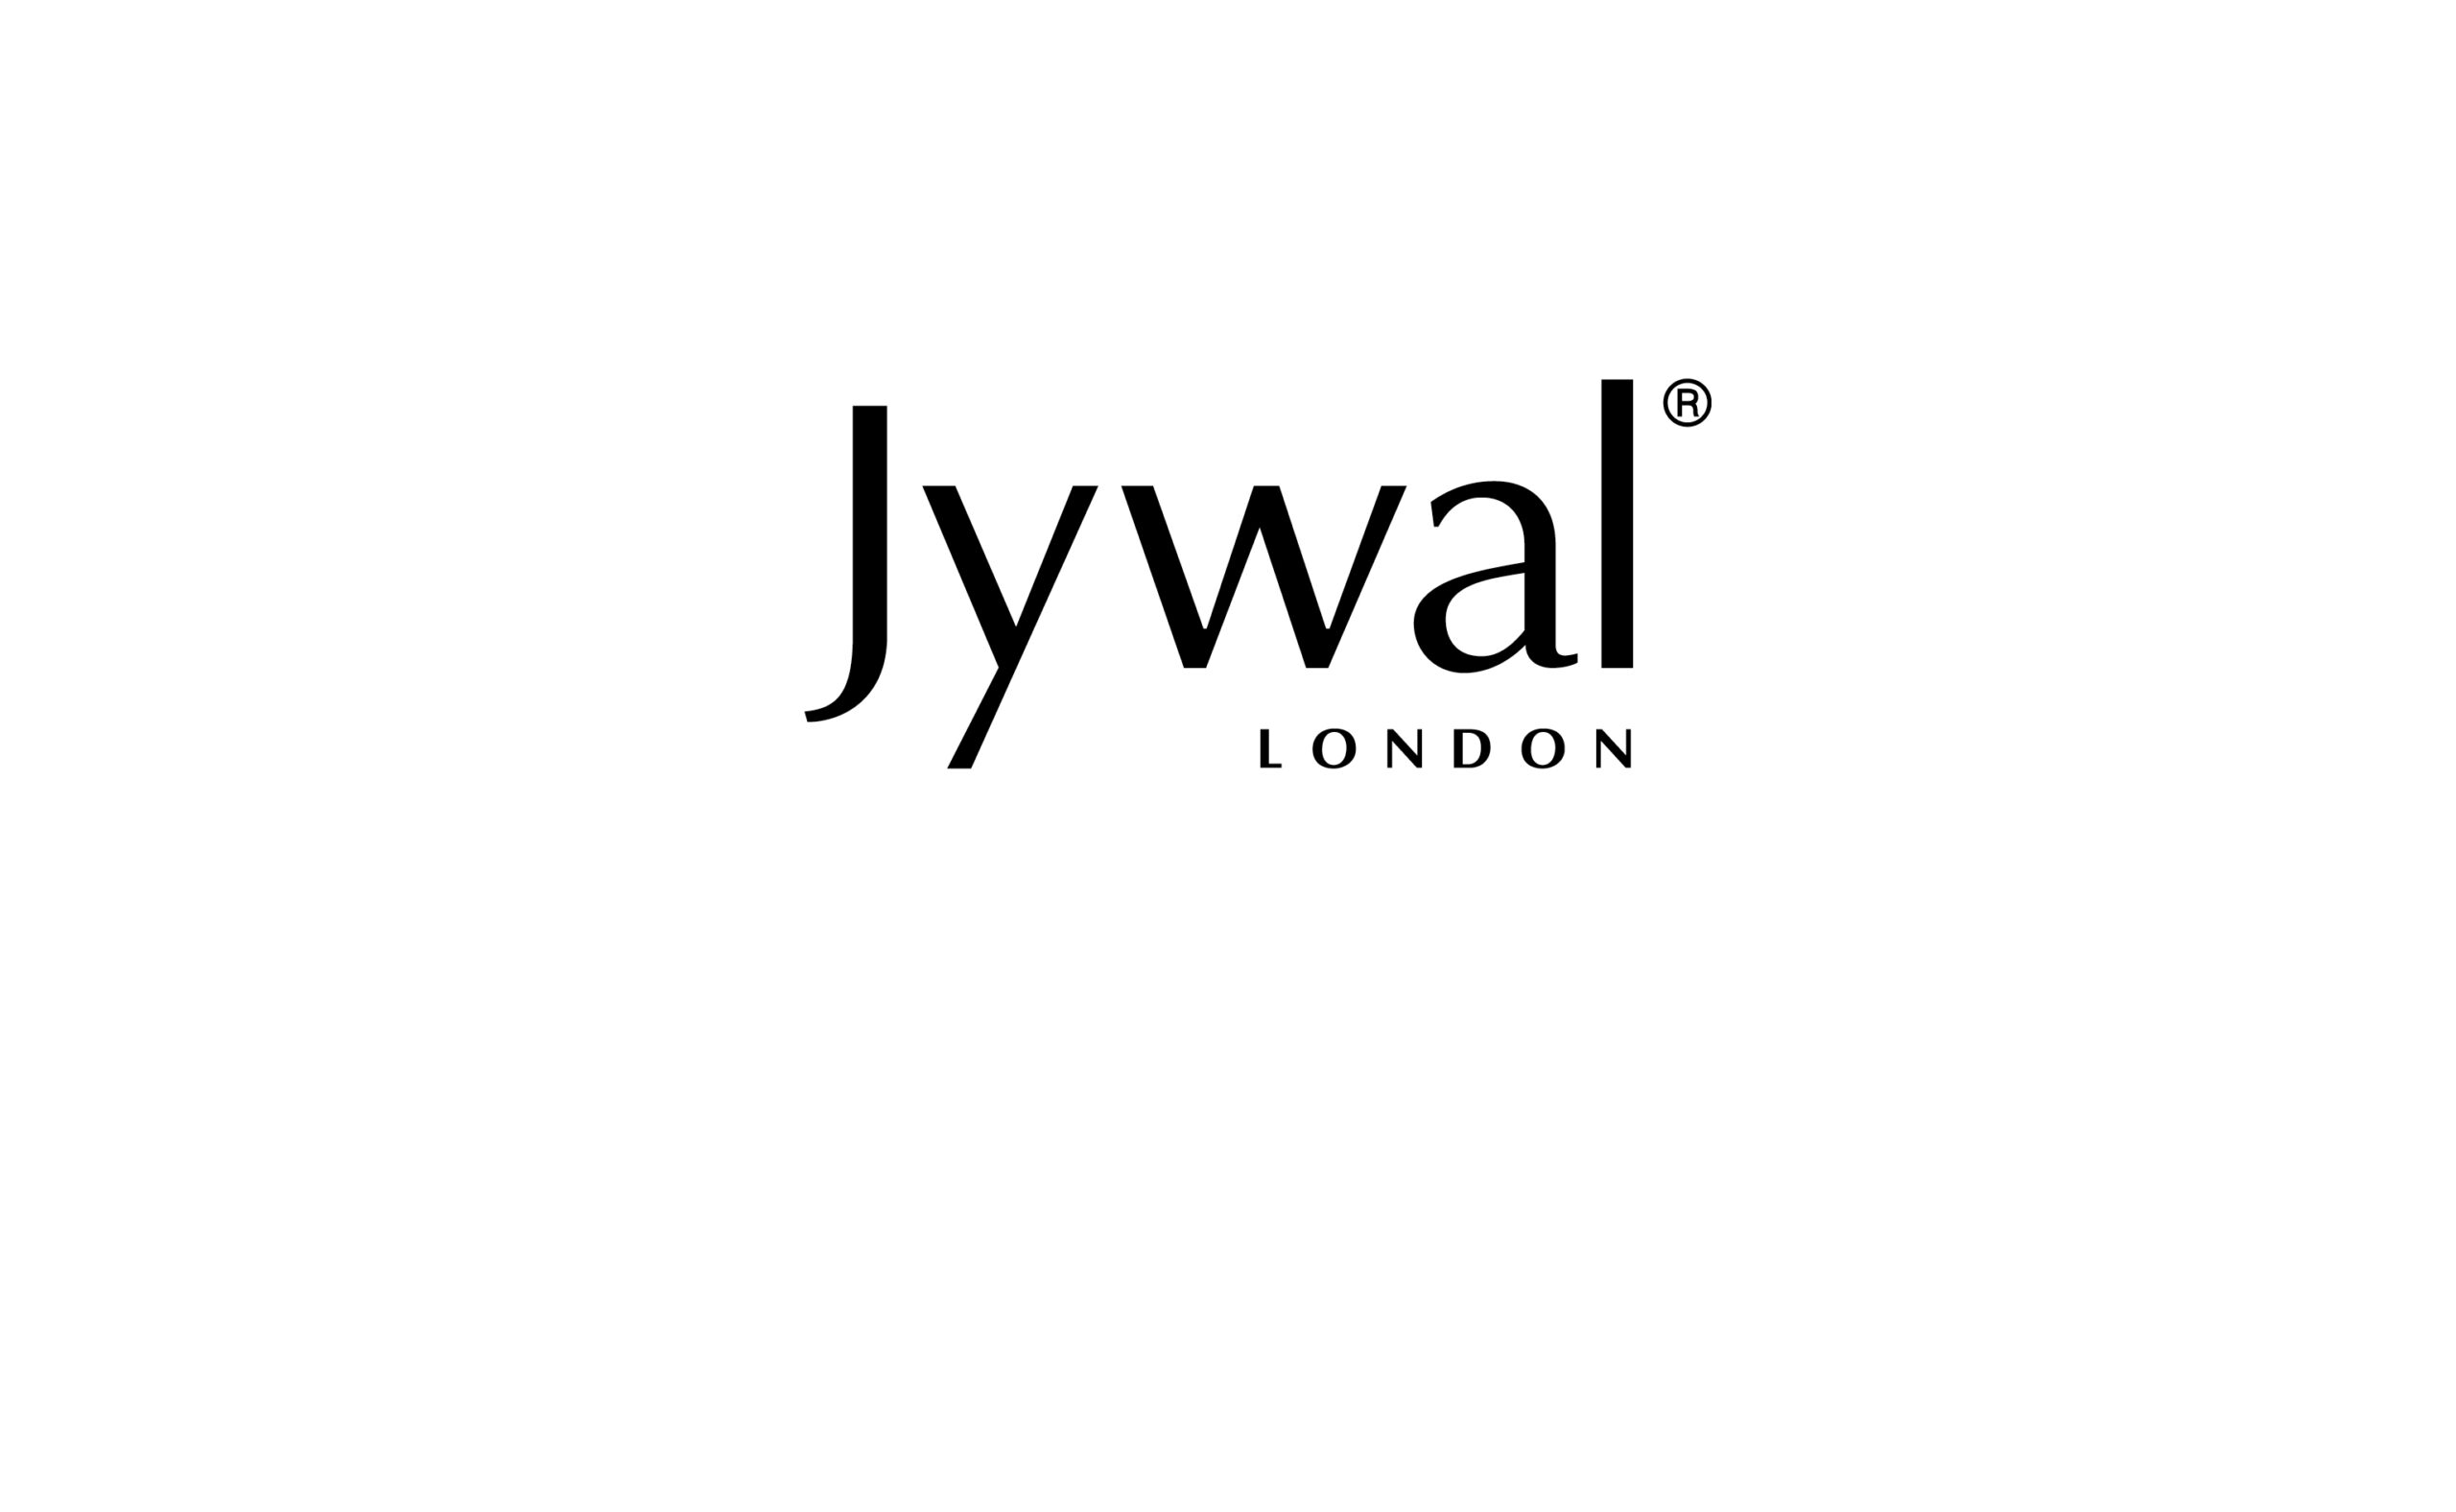 Jywal London